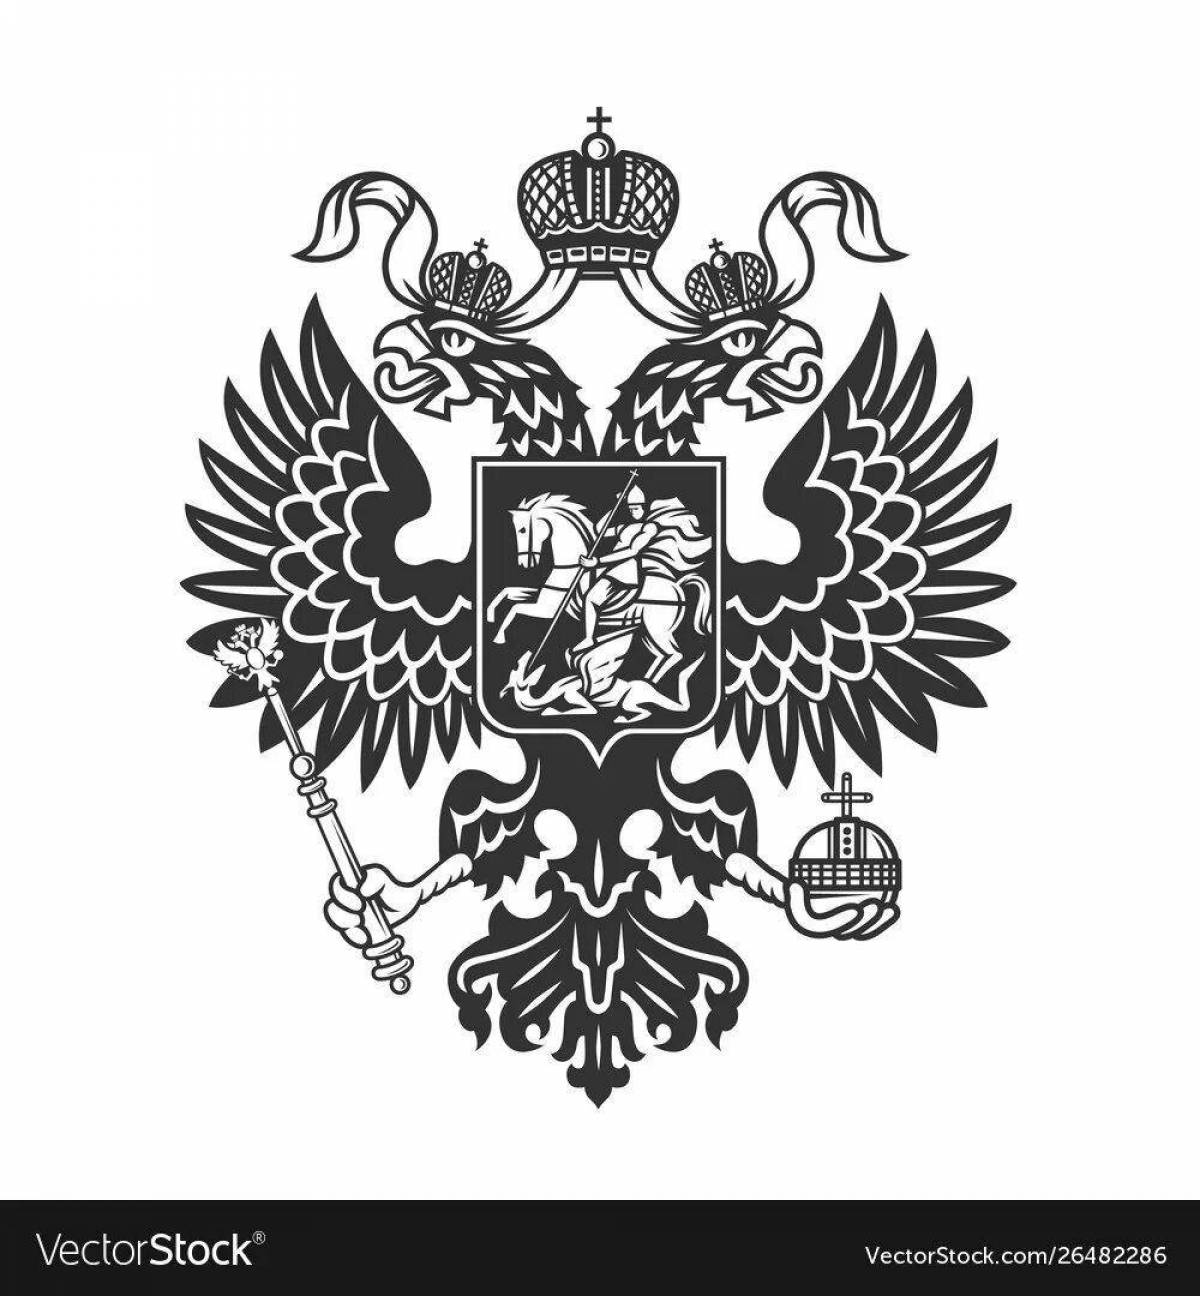 Впечатляющая раскраска герб российской империи